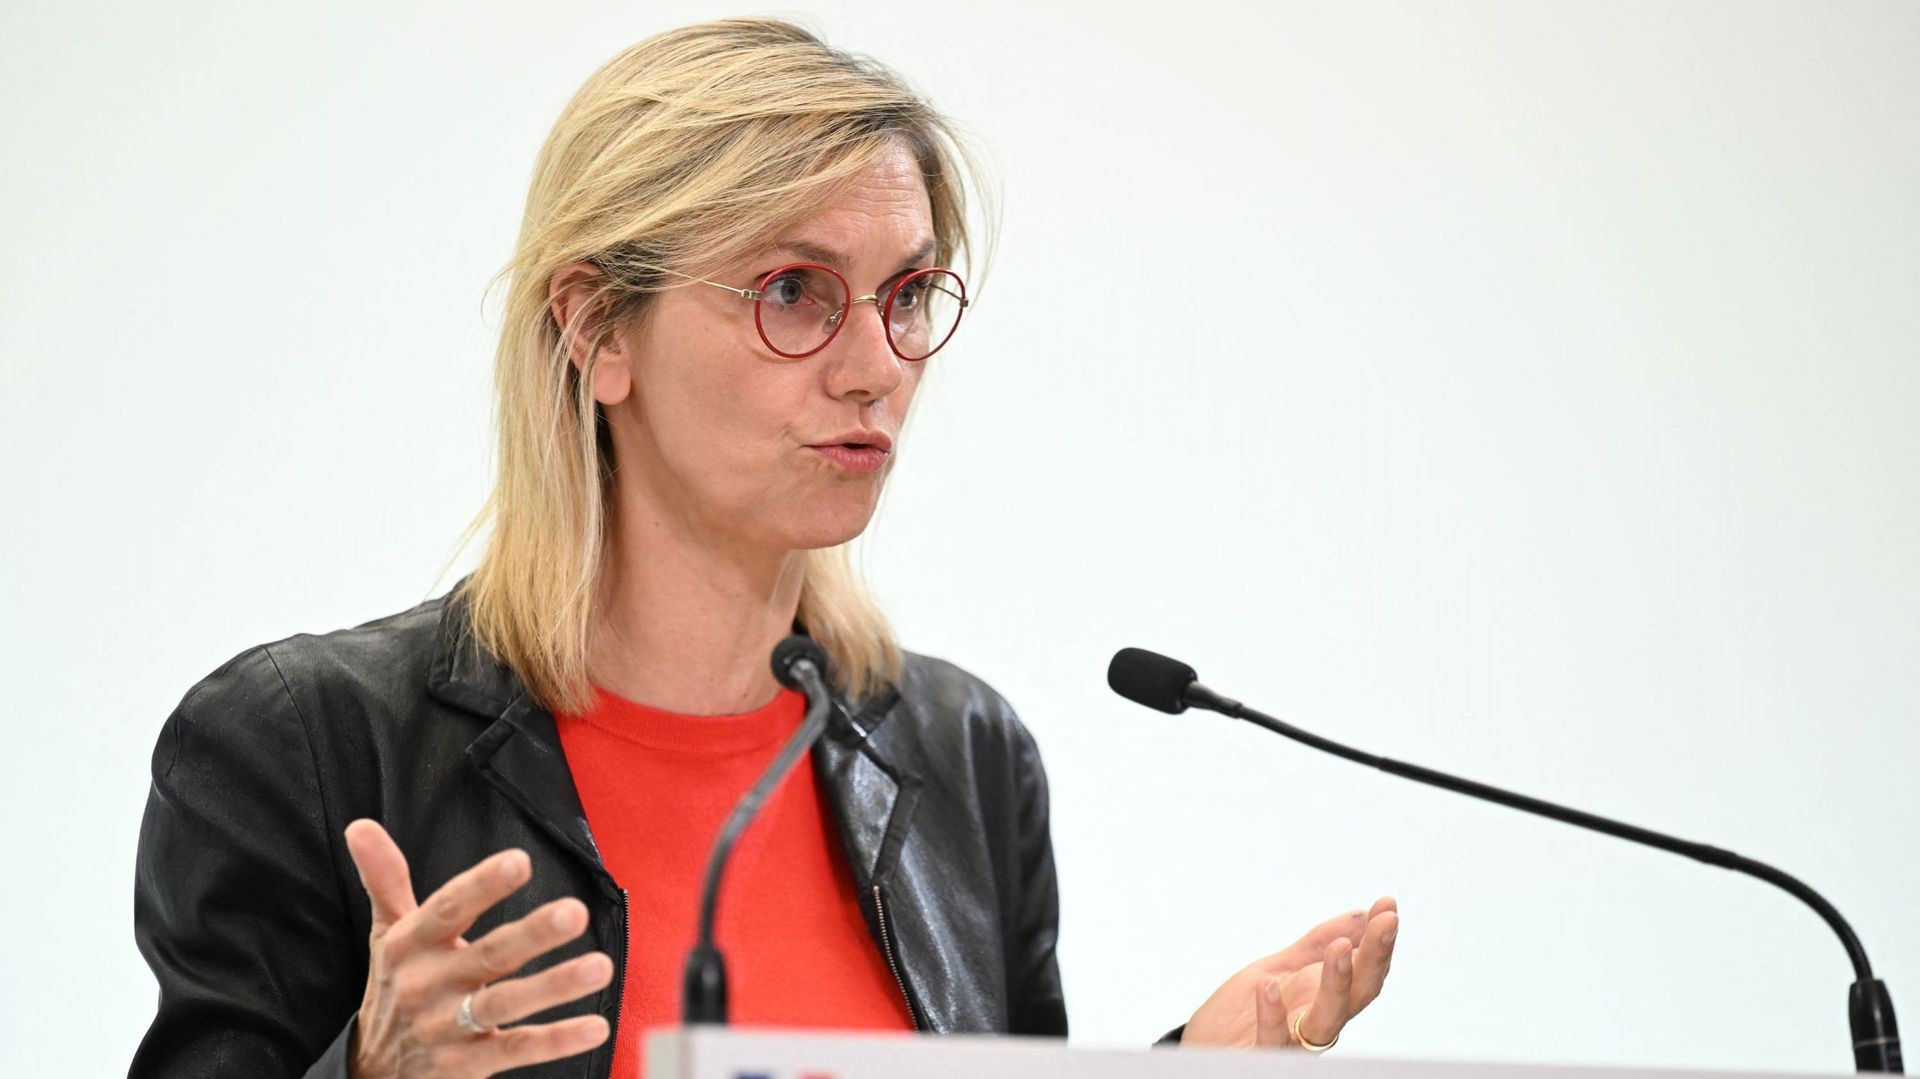 La ministre française de la Transition énergétique Agnès Pannier-Runacher fait des gestes alors qu'elle prononce un discours lors d'une conférence de presse sur la situation énergétique en France et en Europe à Paris, le 14 septembre 2022.